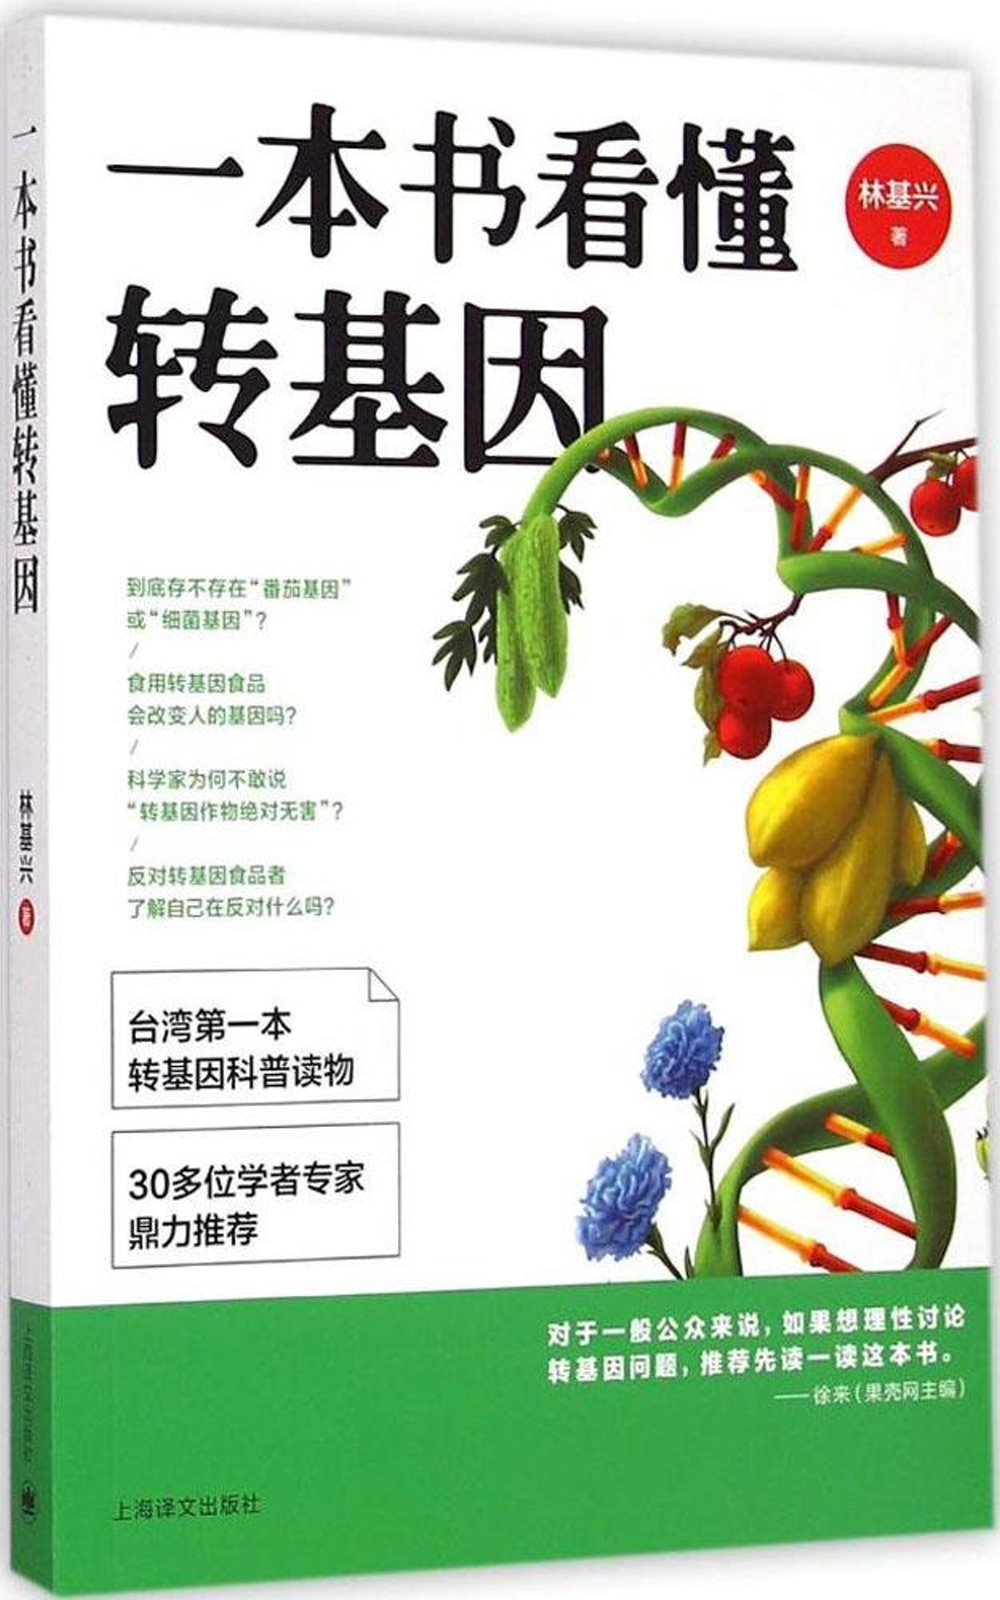 一本書看懂轉基因